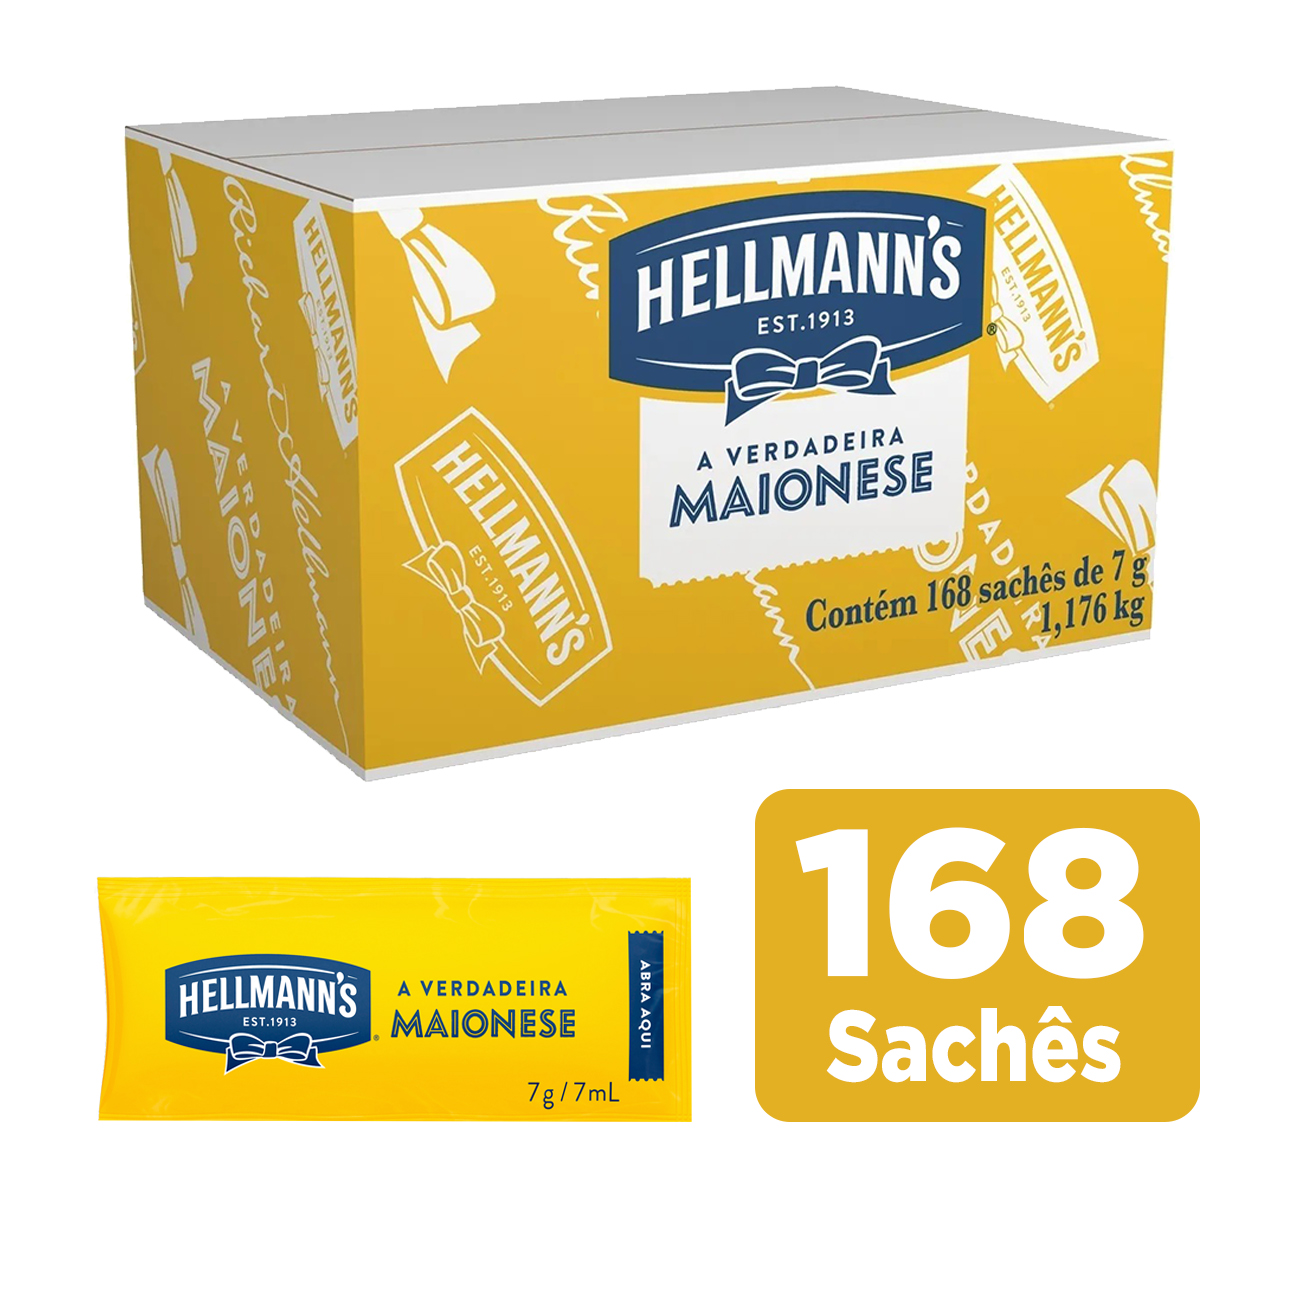 Maionese Hellmann's Tradicional Sach 7g | Caixa com 168 Unidades